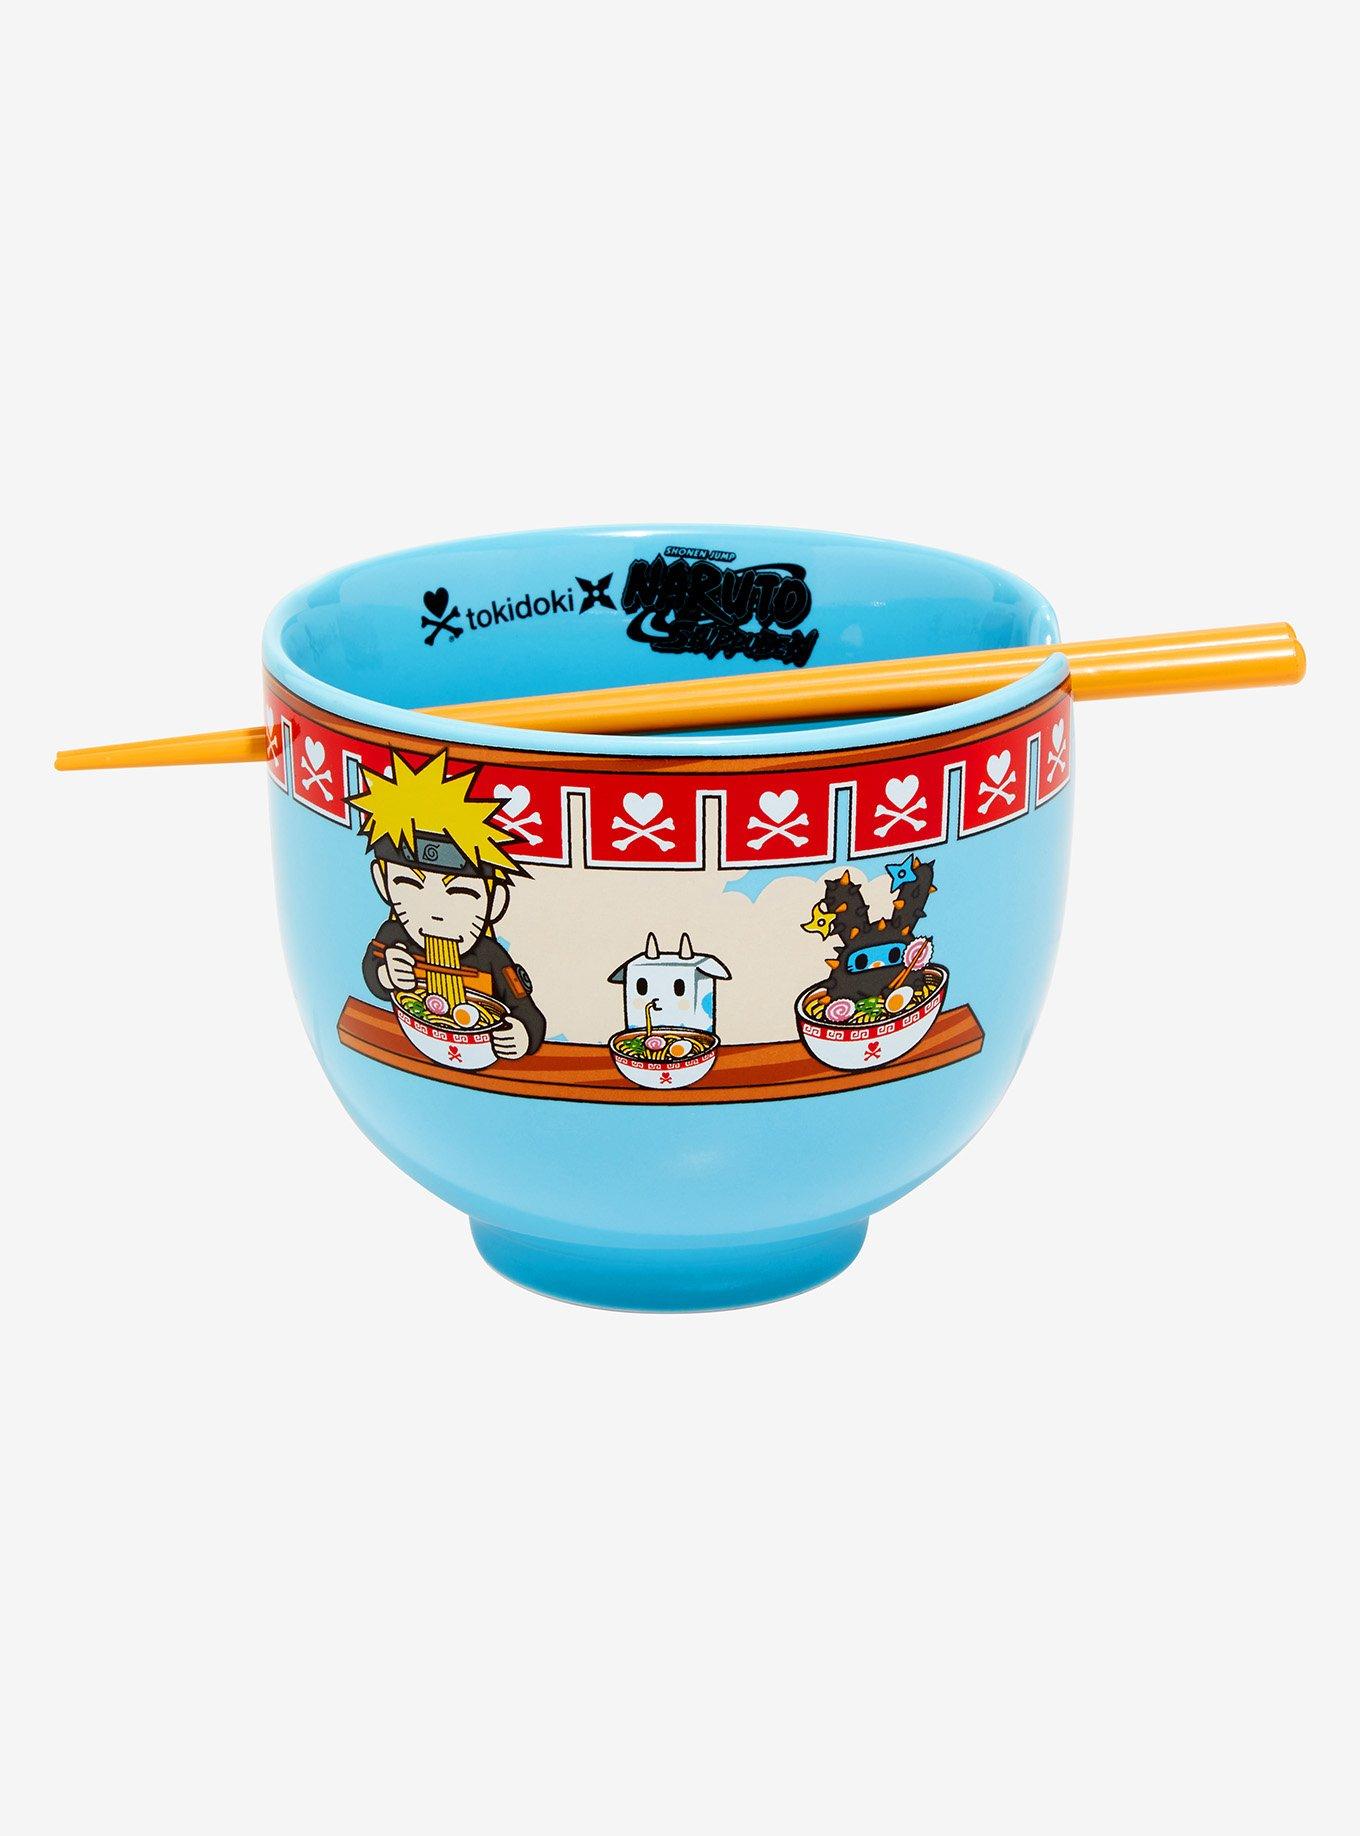 Naruto Shippuden Ichiraku Ramen Chopsticks Squeaky Dog Toy